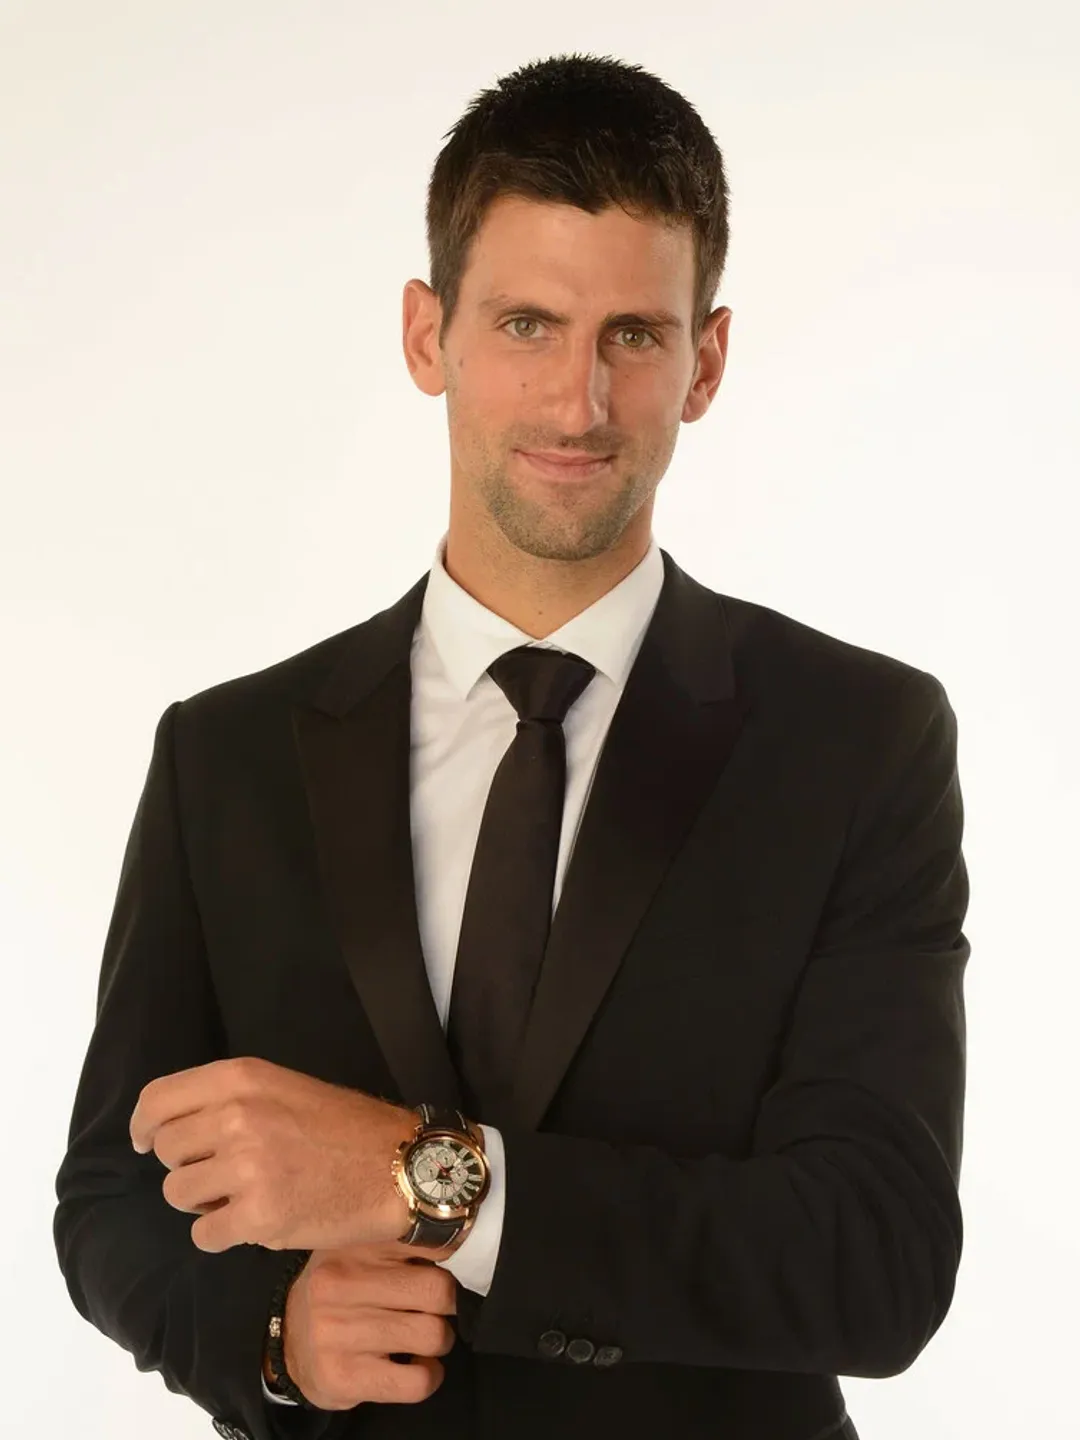 Novak Djokovic net worth